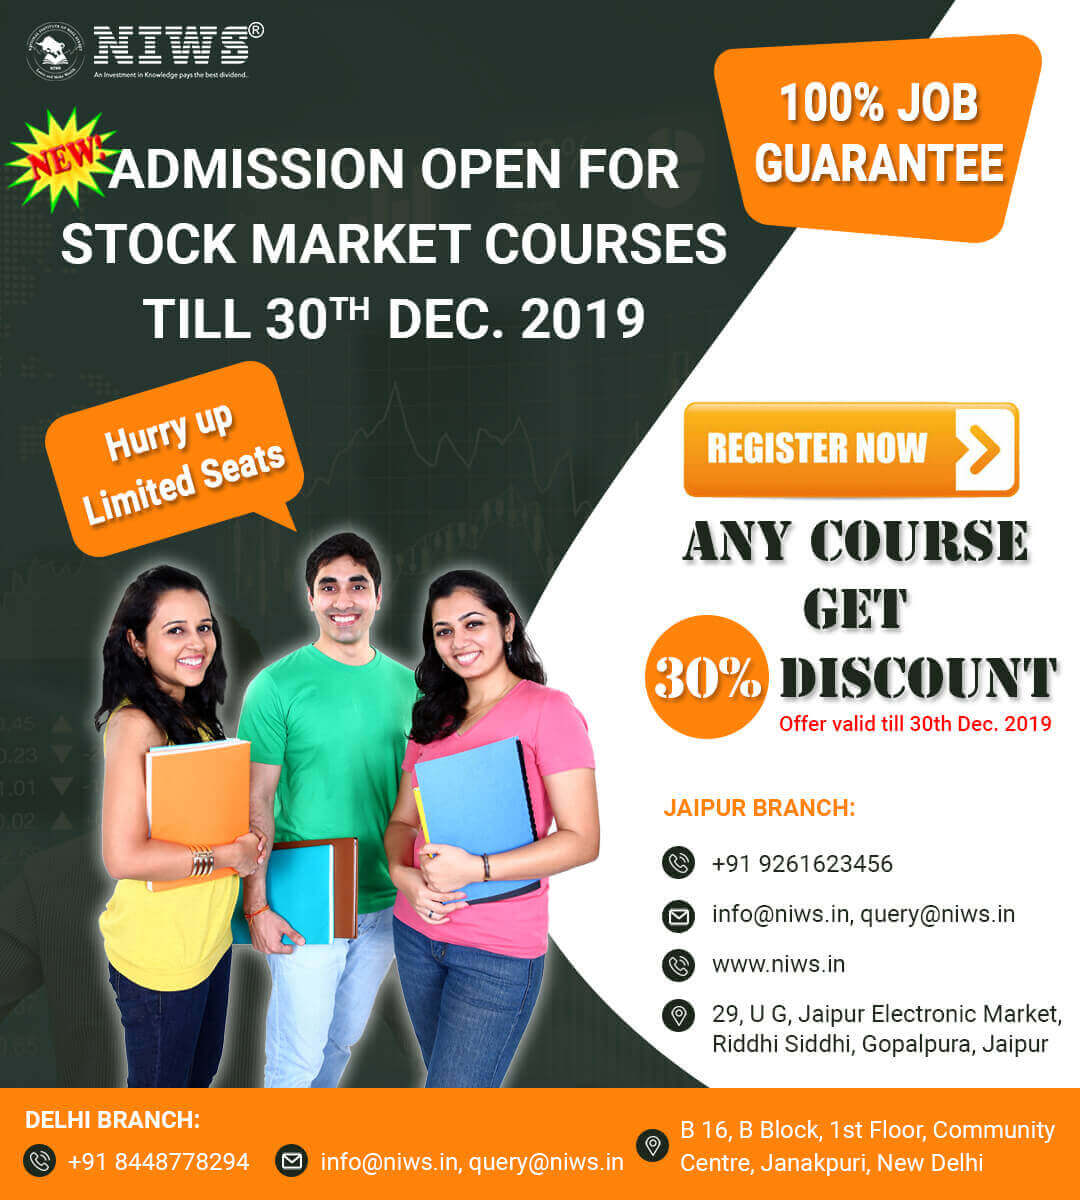 Enroll in Best Stock Course in Delhi